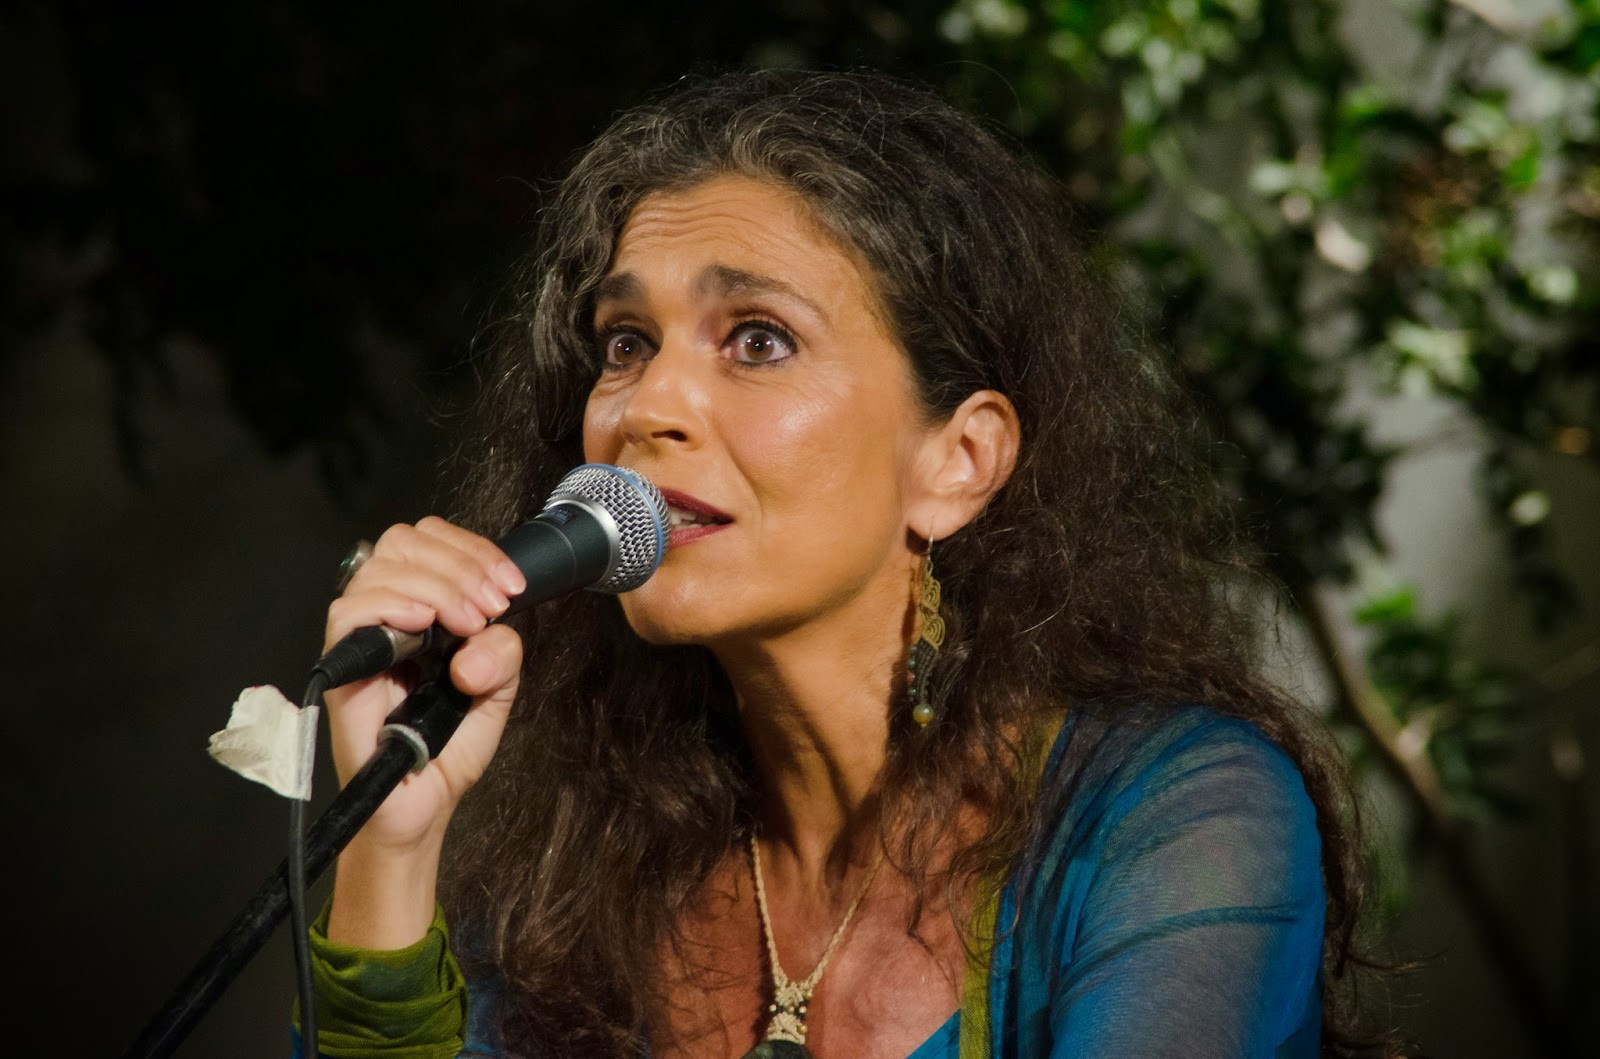 Η Σαβίνα Γιαννάτου συνδυάζει στοιχεία αυτοσχεδιασμού με τις μουσικές του κόσμου